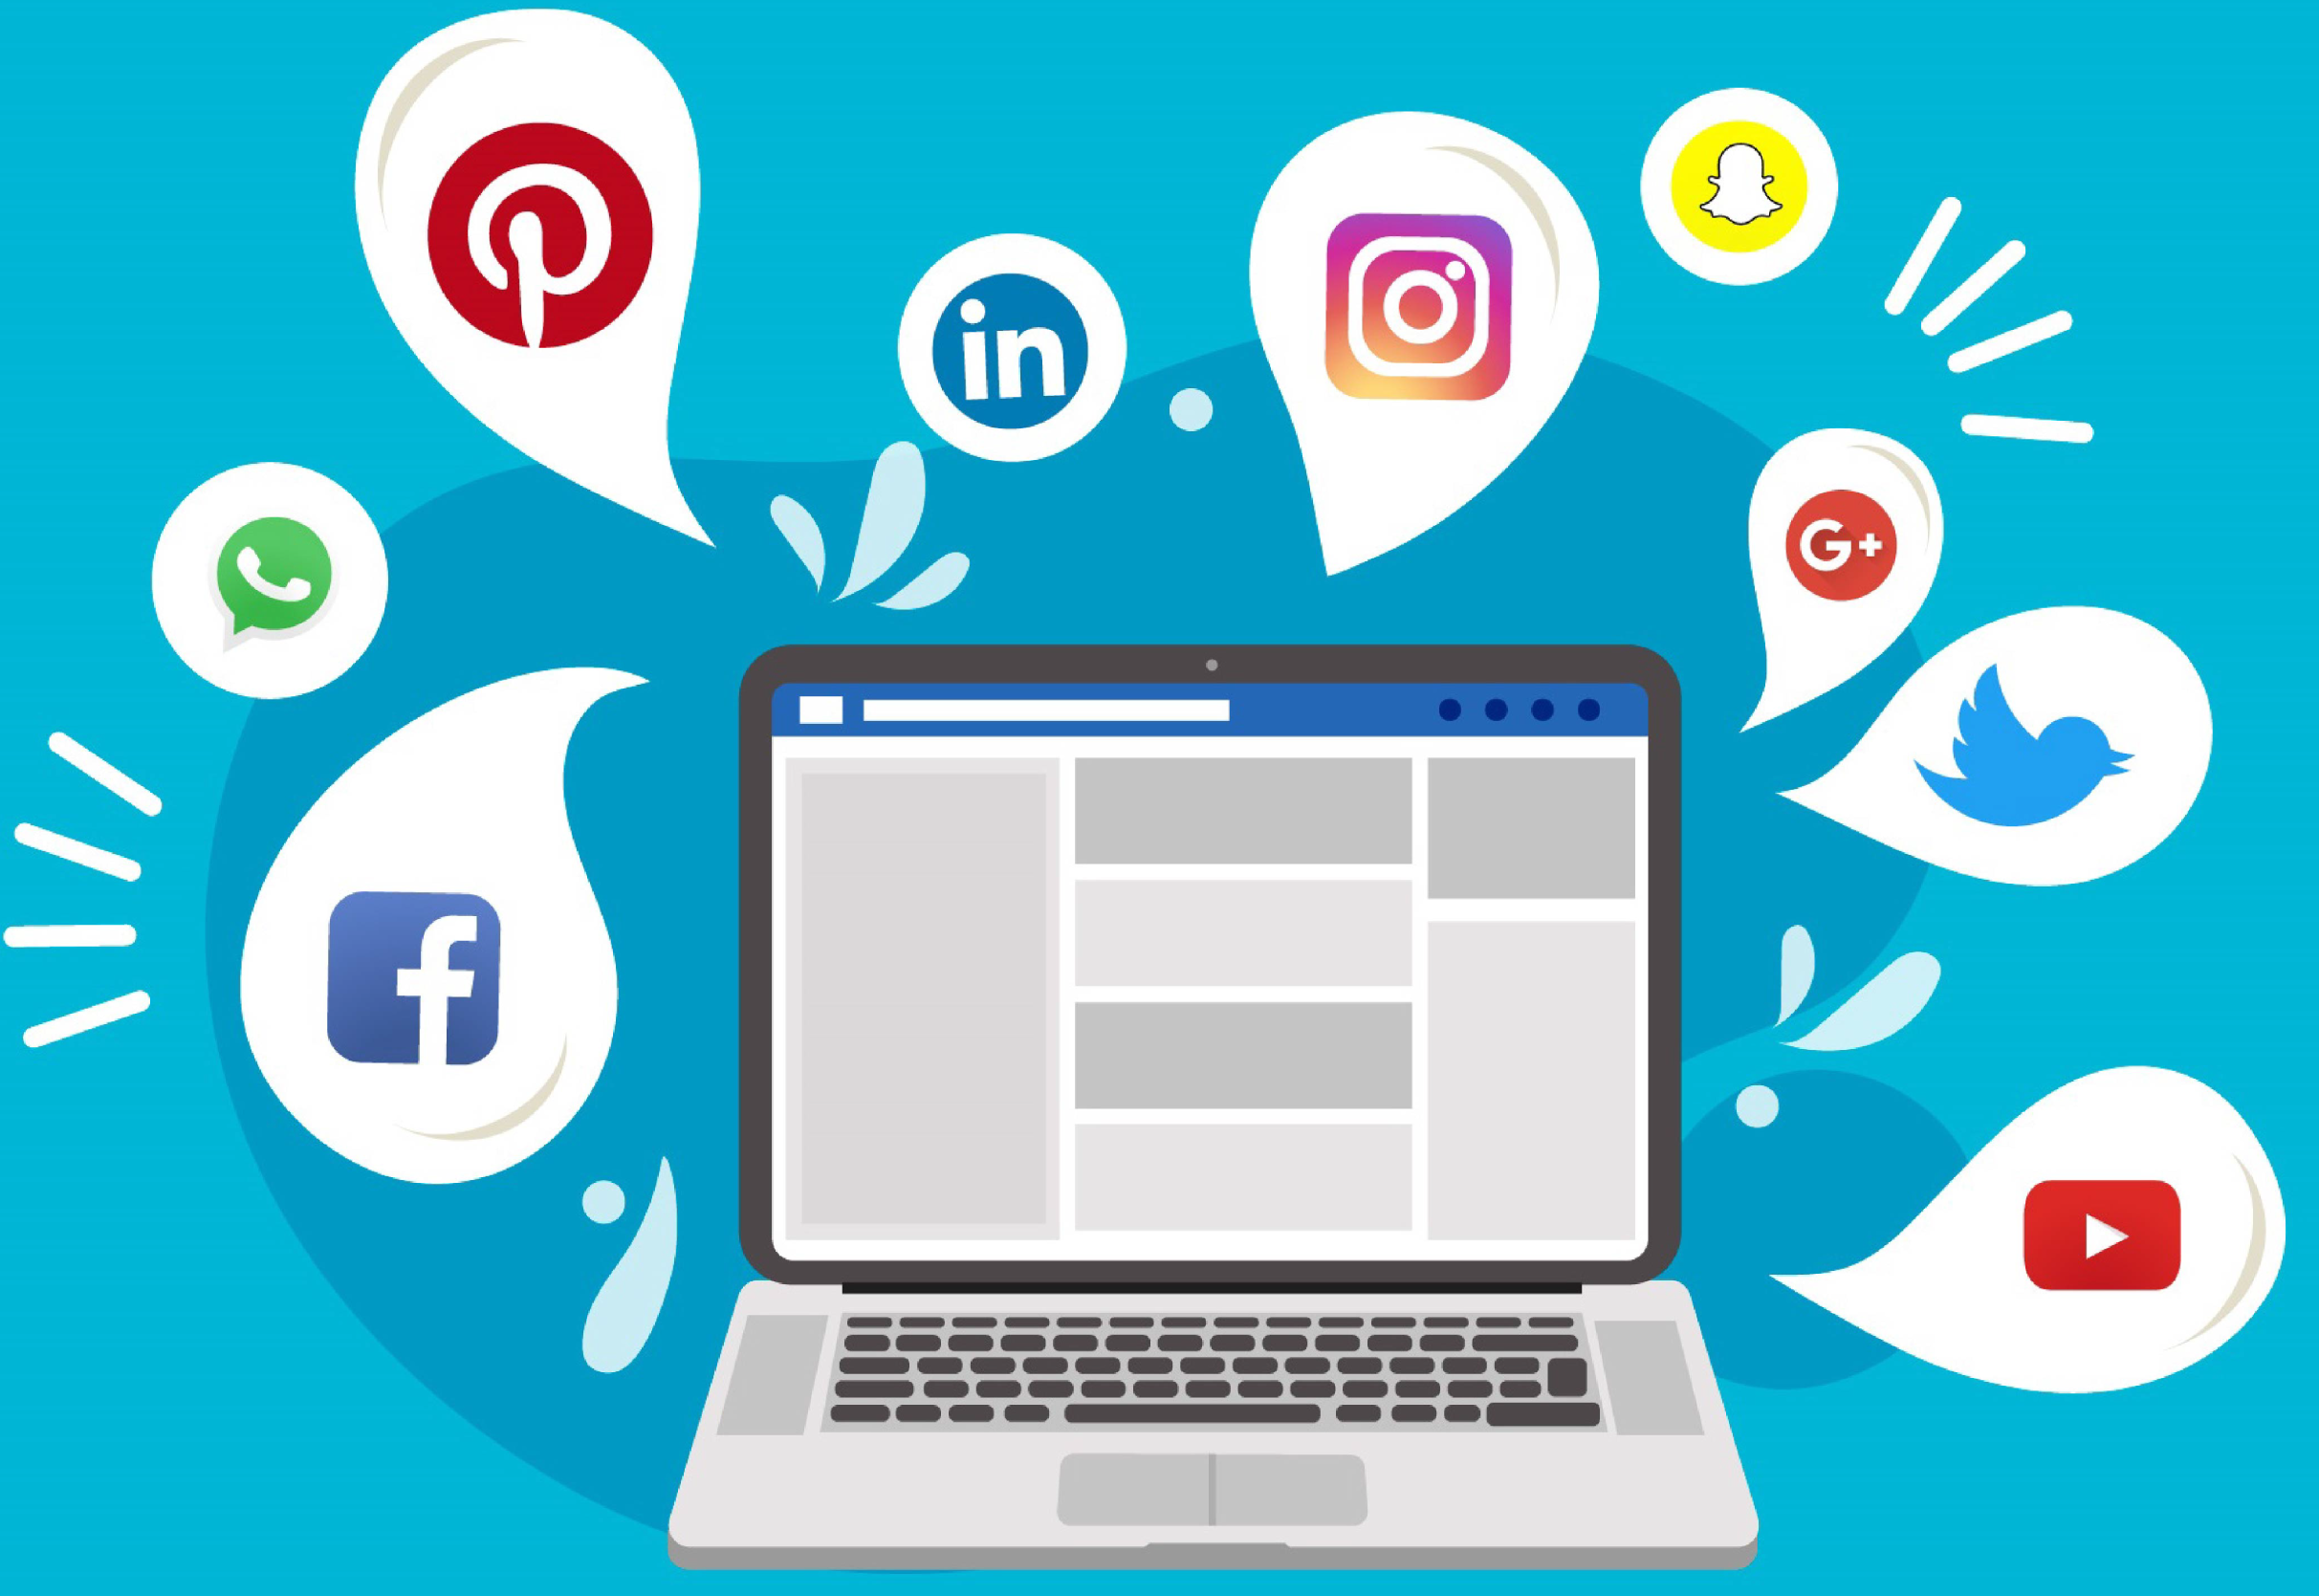 Sosyal Medya Hesaplarımız | ZAKE